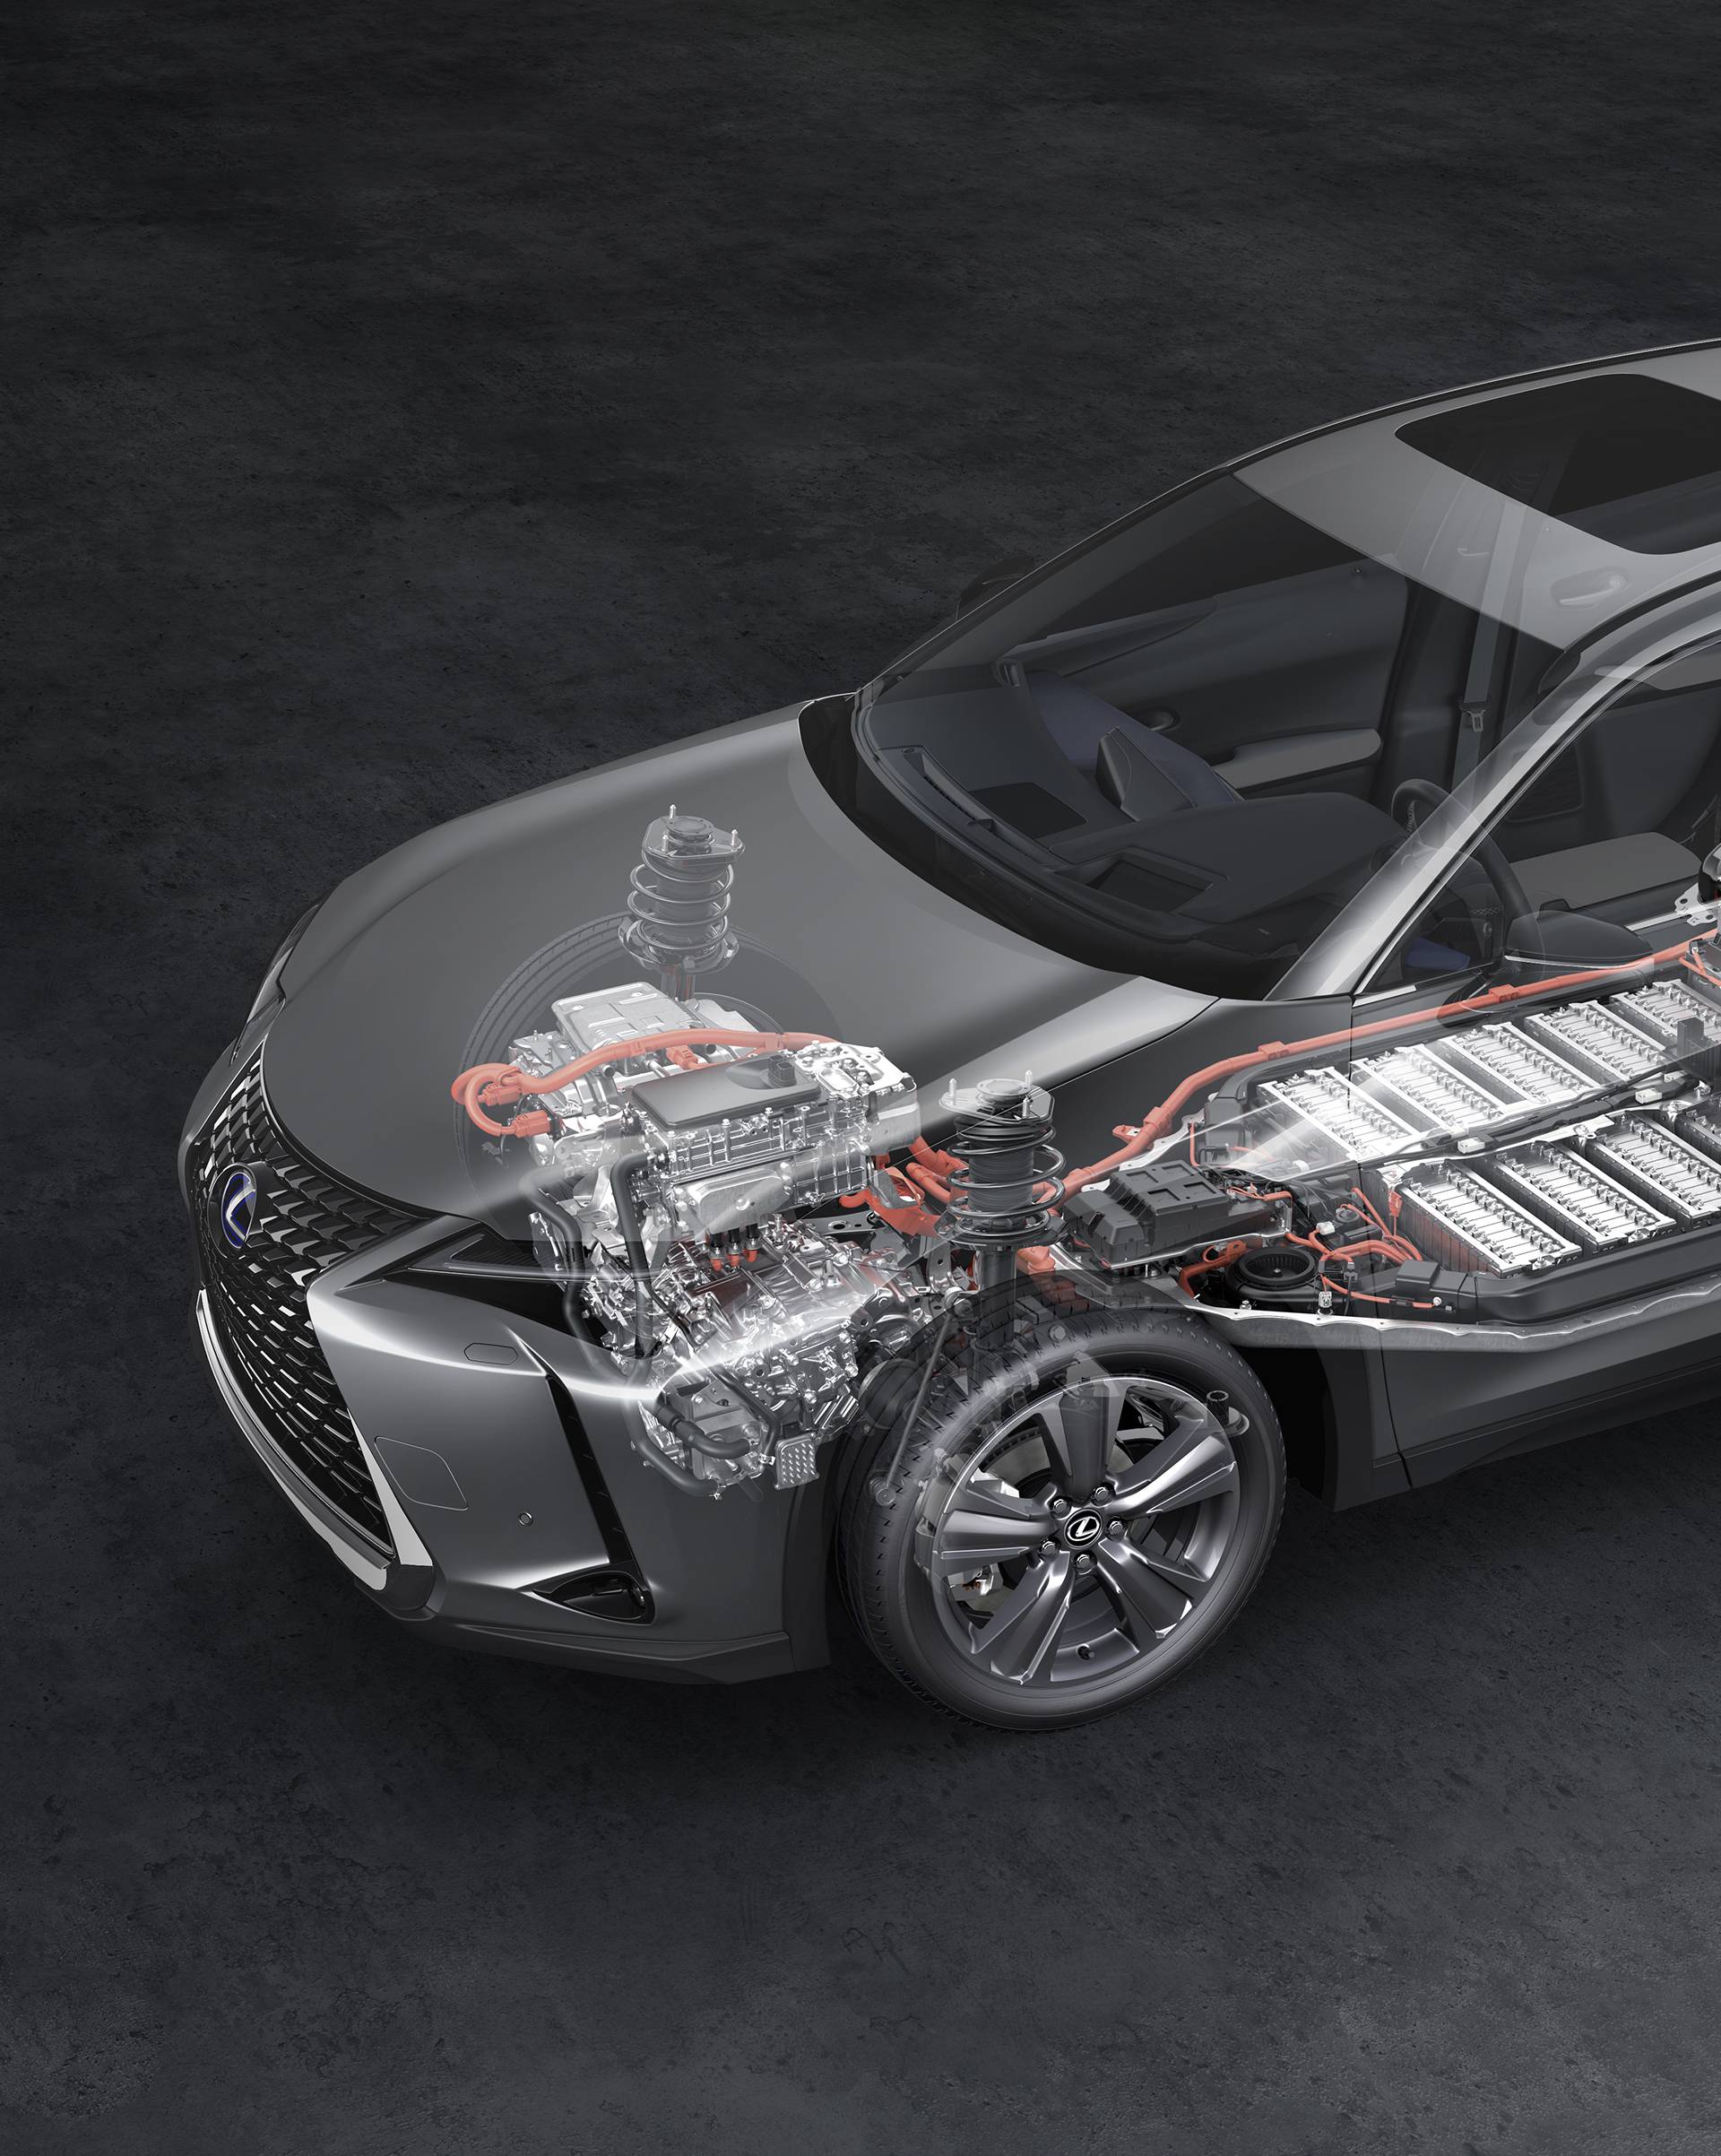 Električni Lexus s jamstvom na bateriju do milijun kilometara